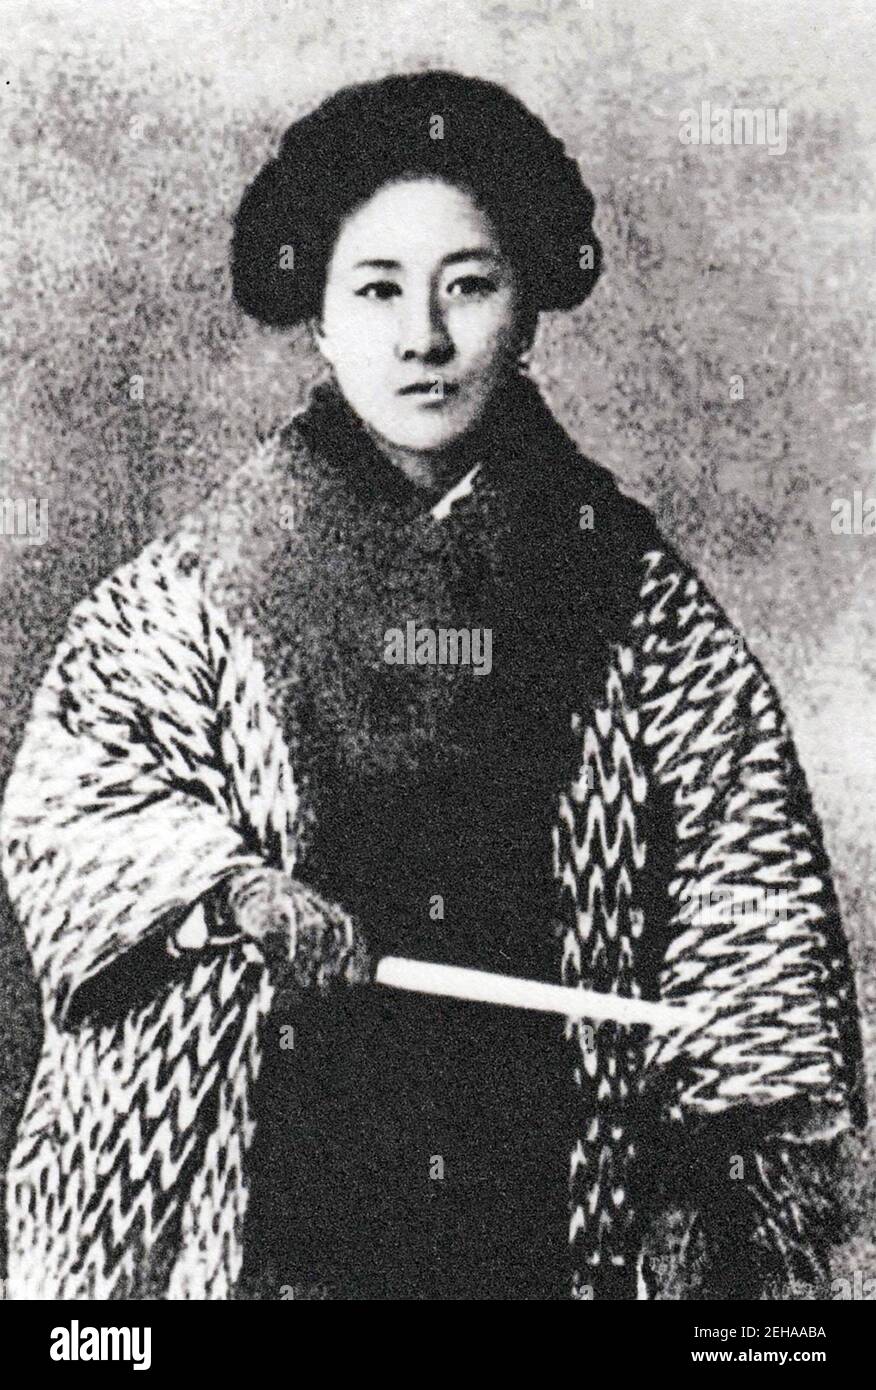 QIU JIN (1875-1907) Chinesischer Revolutionär, Schriftsteller und Feminist Stockfoto